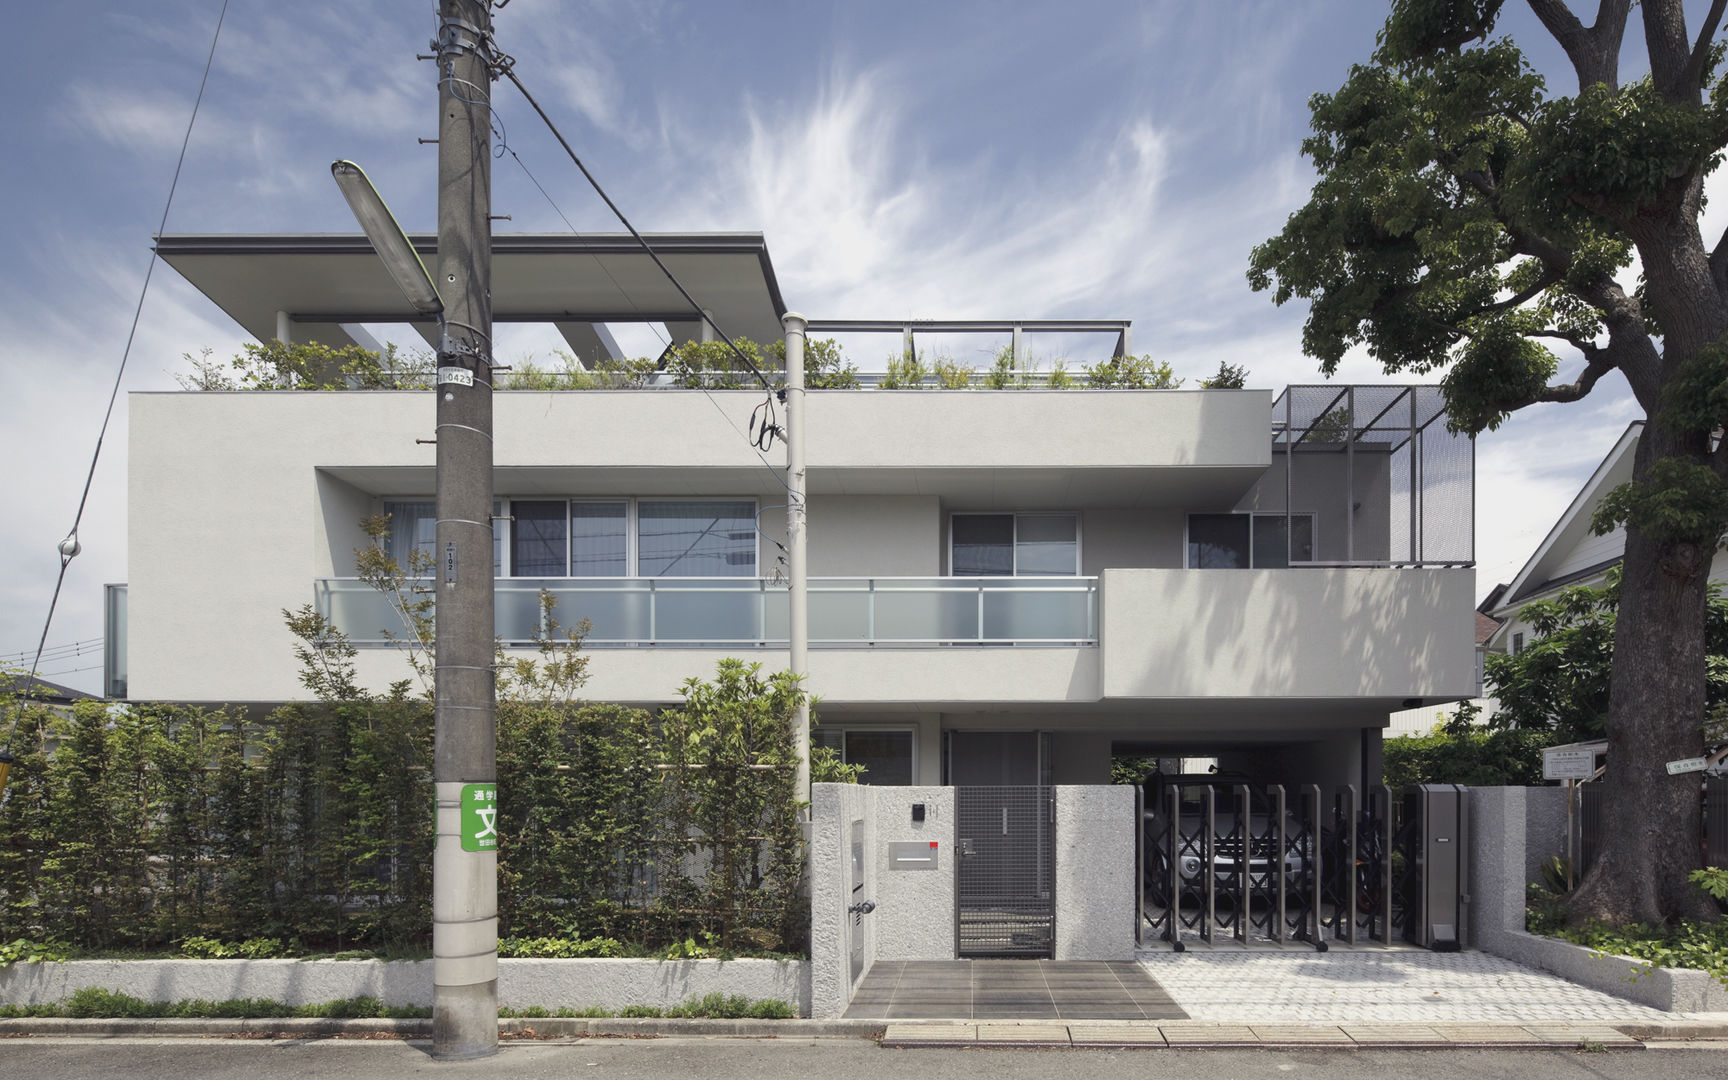 ミドセンチュリーテイスト 居間がテラスと一体化して繋がる成城の住まい, JWA，Jun Watanabe & Associates JWA，Jun Watanabe & Associates Maisons modernes